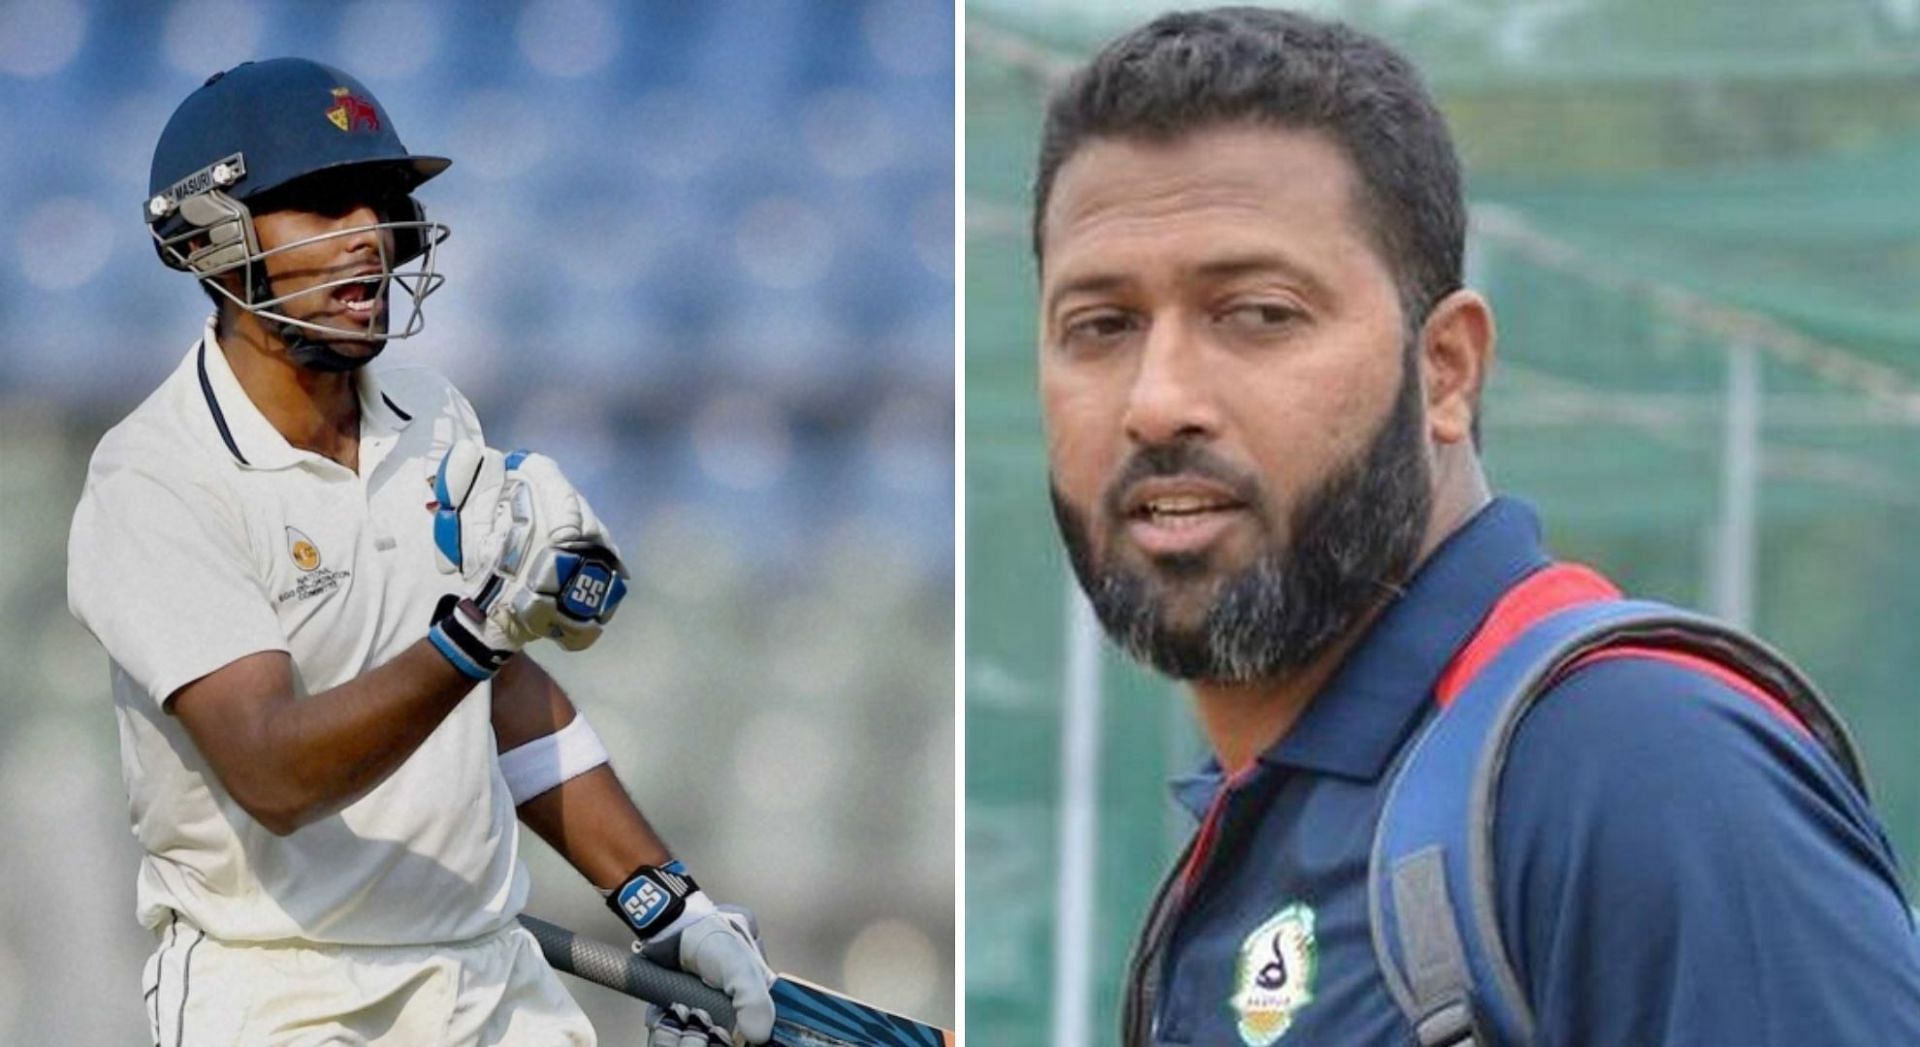 No Suryakumar Yadav as Wasim Jaffer picks his India playing XI for Nagpur Test against Australia